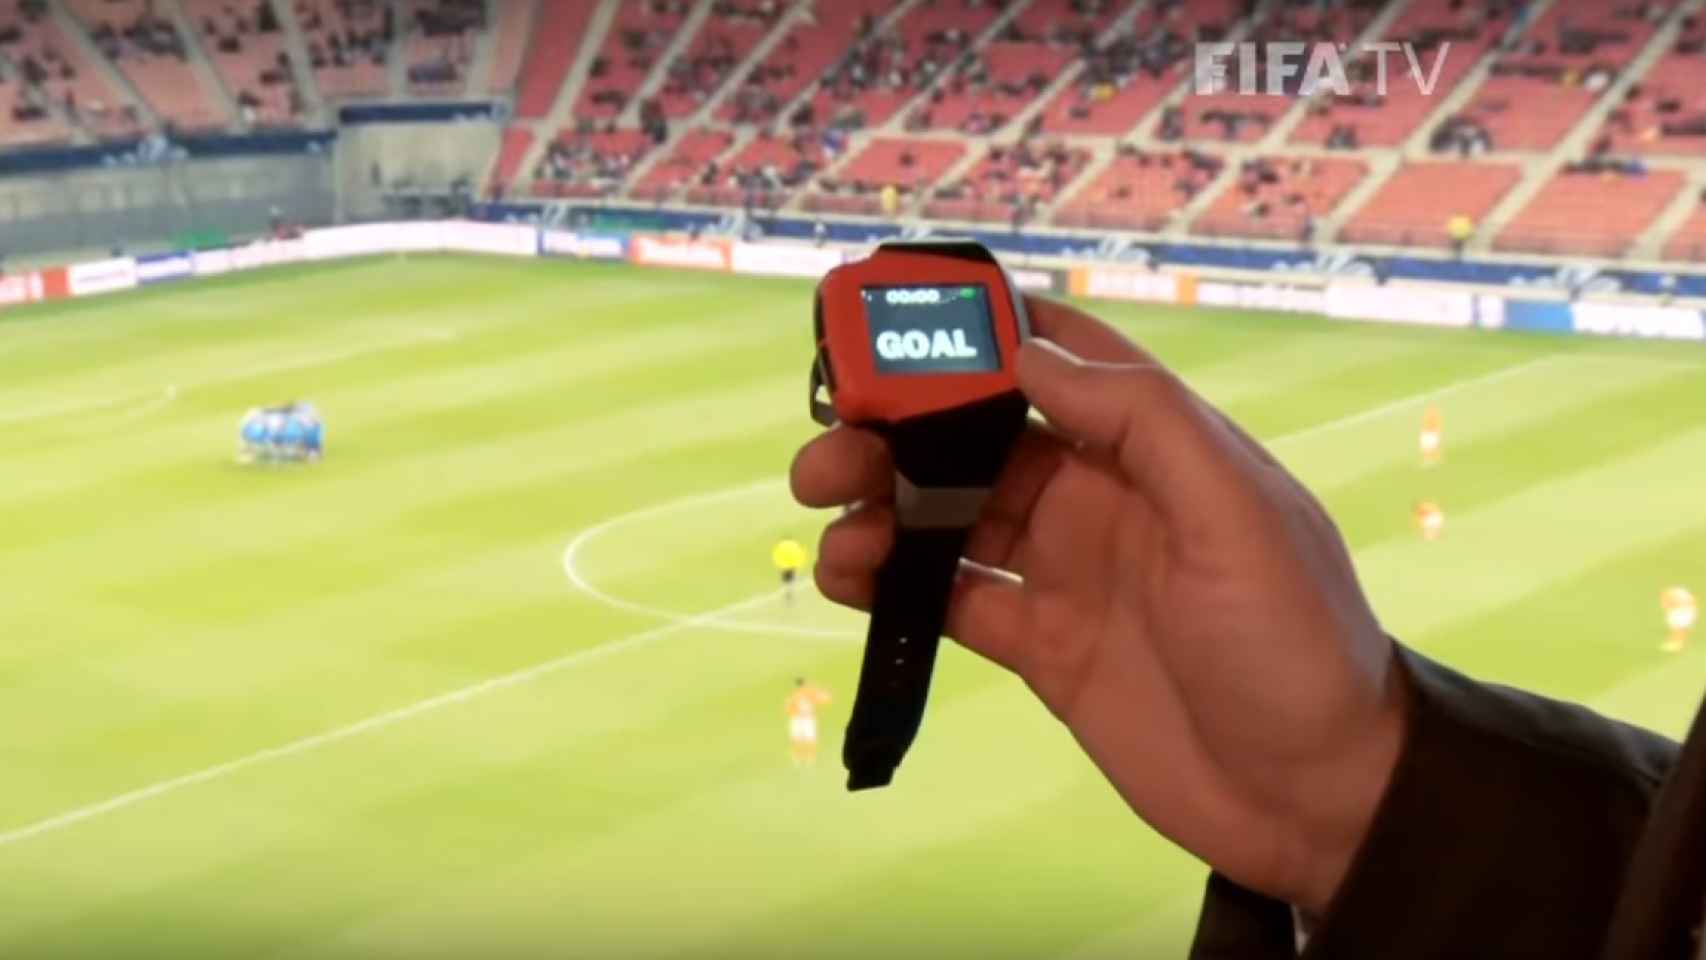 El árbitro lleva un reloj que le avisa si marcan gol.